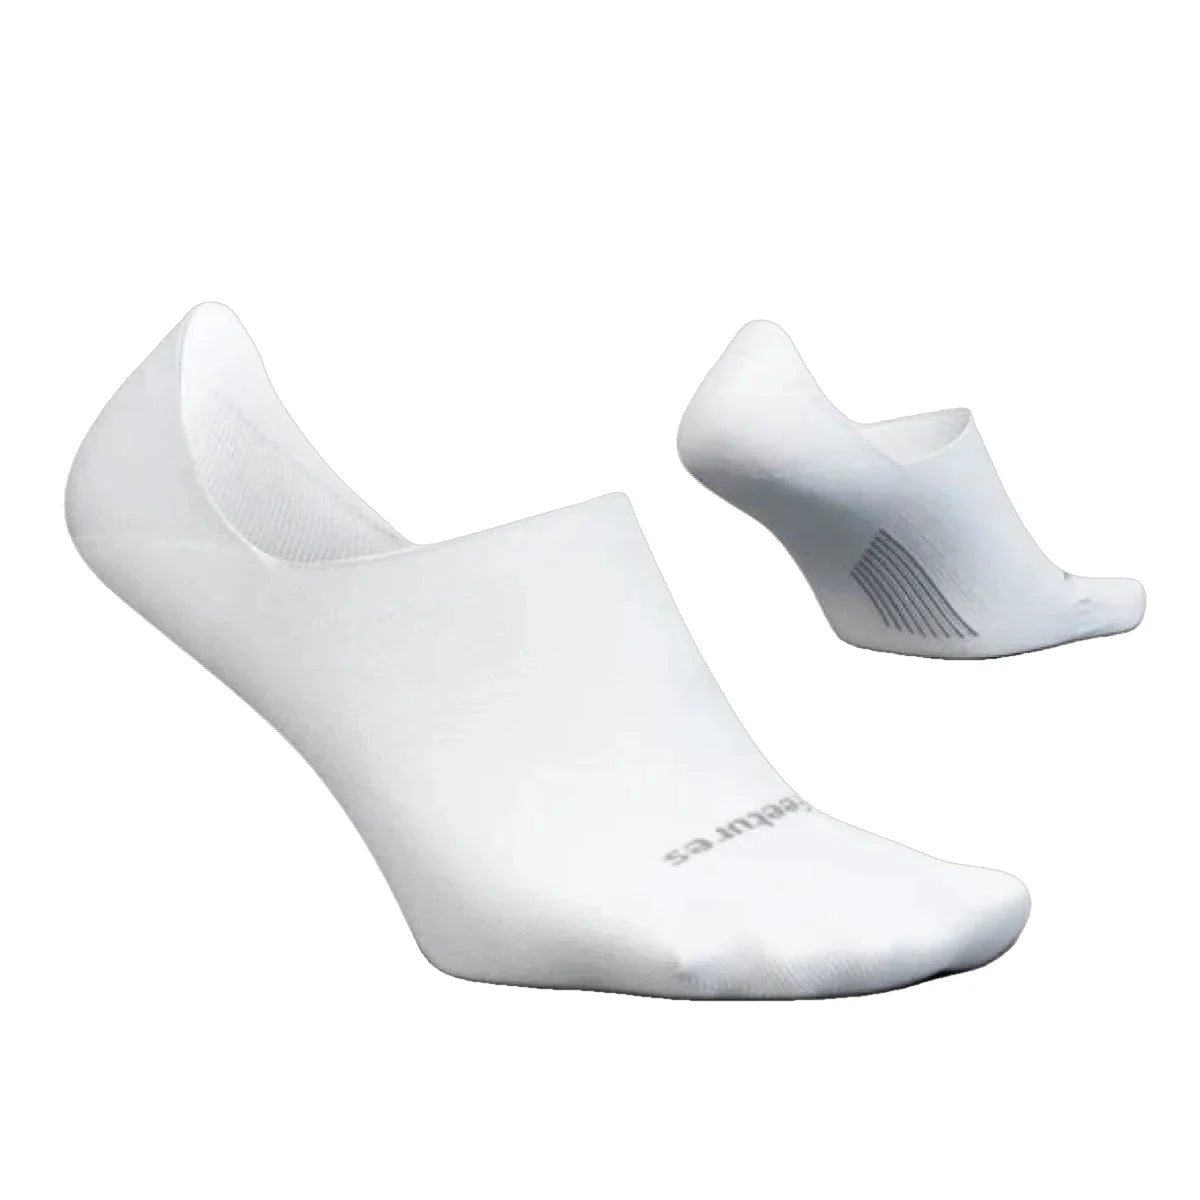 Unisex Feetures Elite Ultra Light Invisible Socks